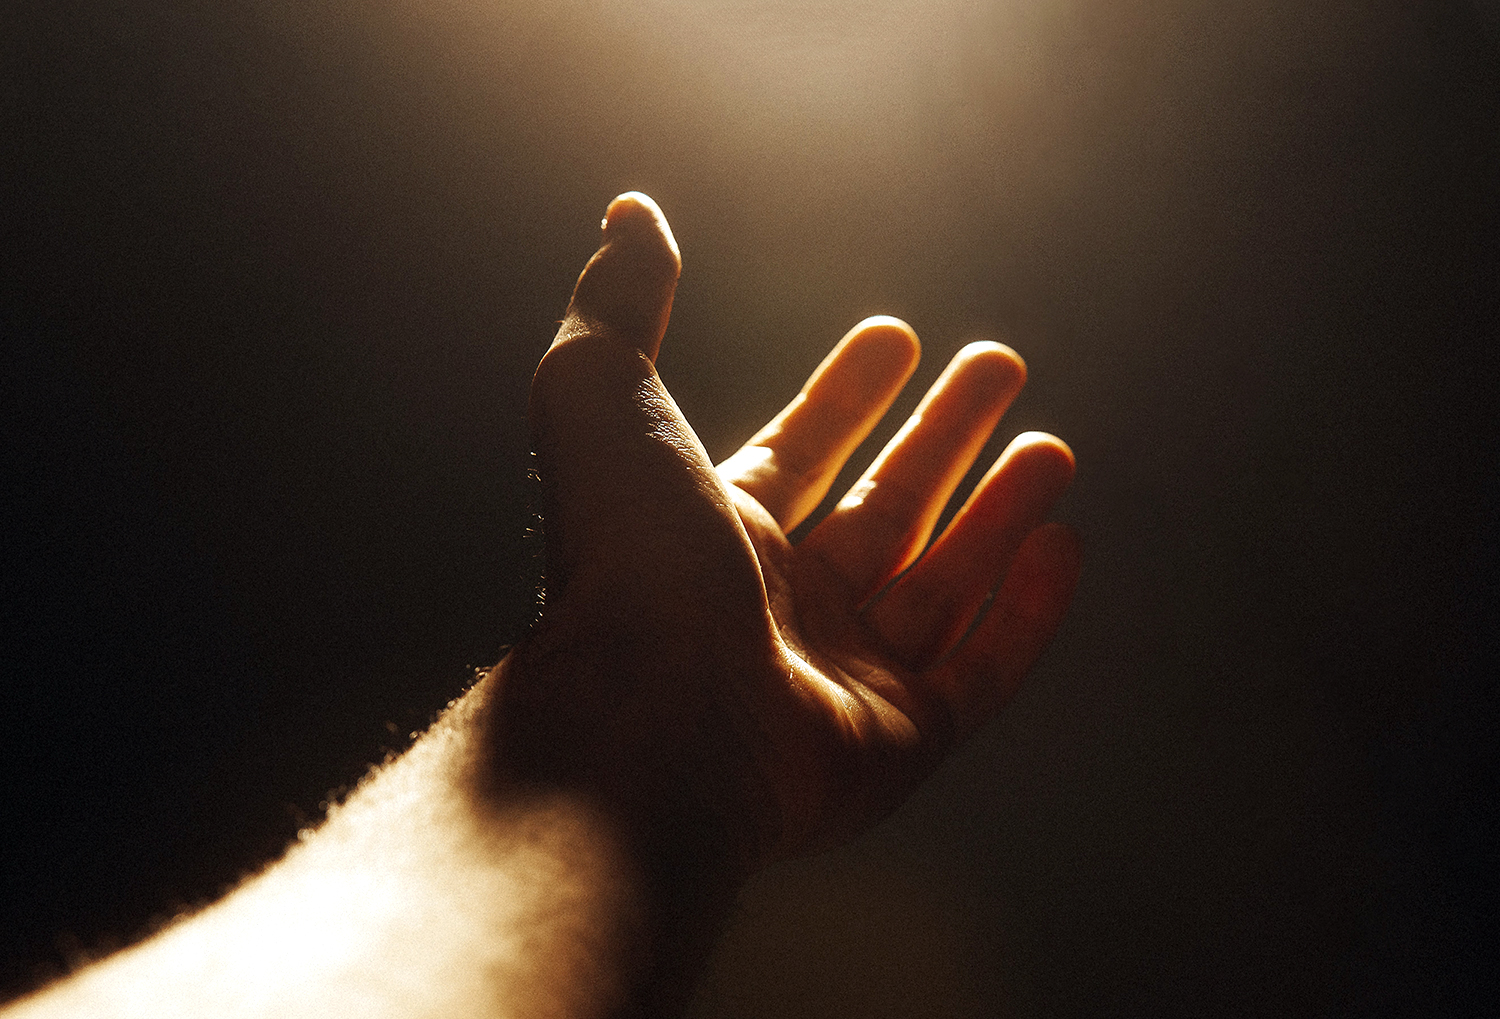 Käsi ojentuu kohti valoa.